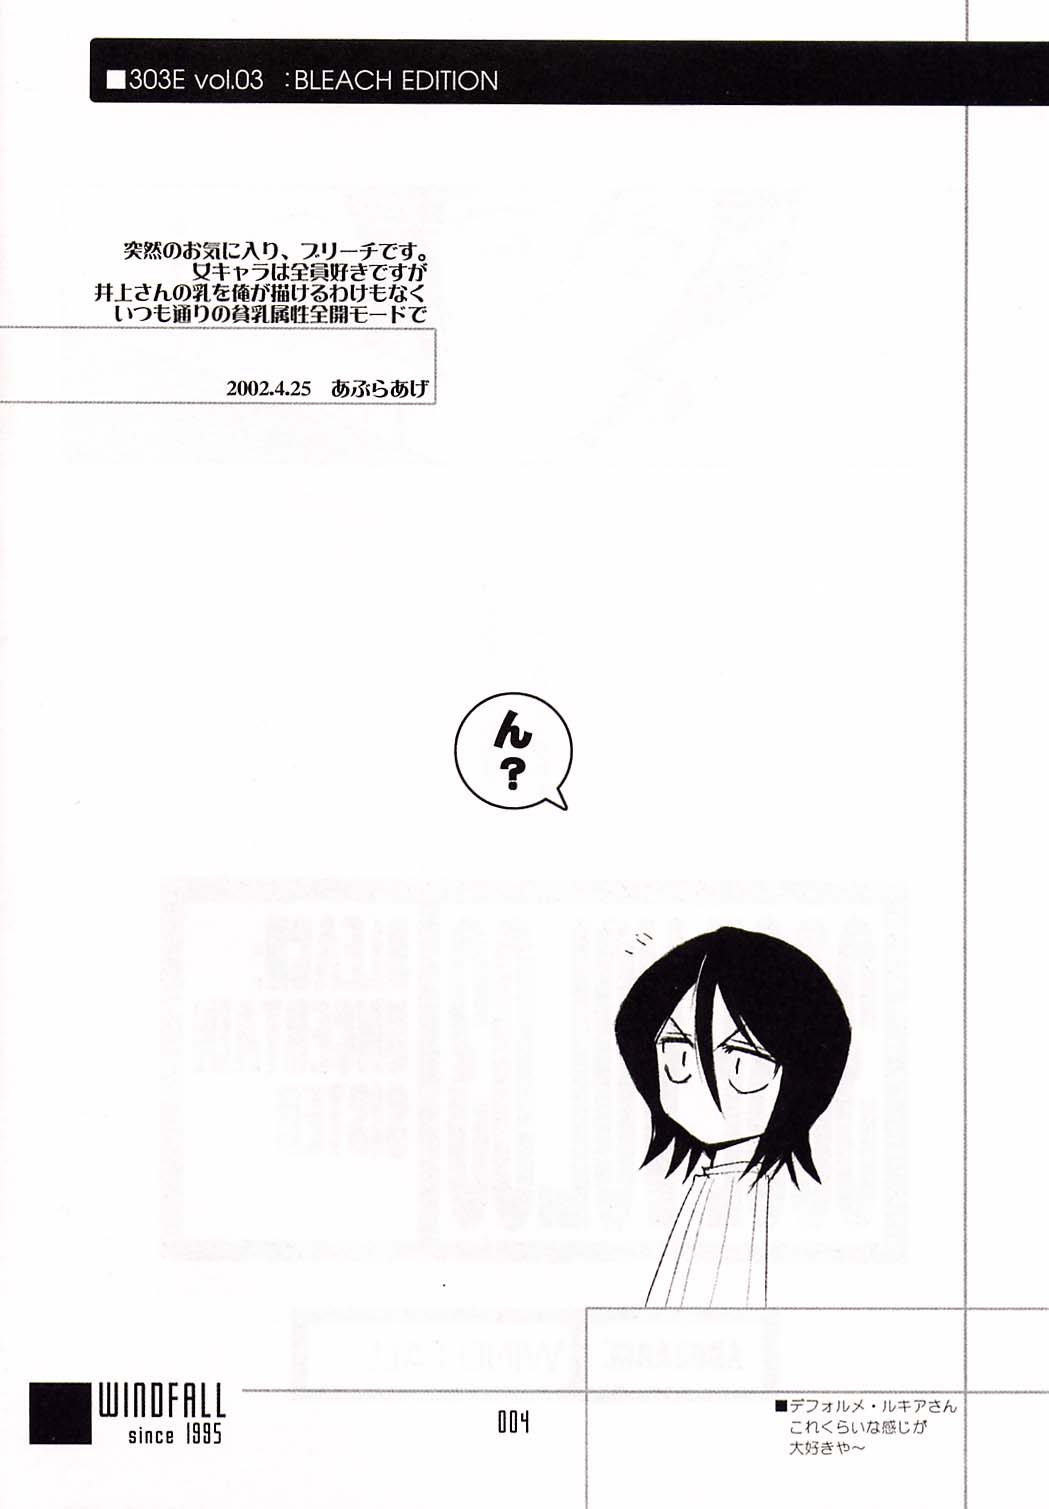 [WINDFALL (あぶらあげ)] 303e Vol.03: Bleach Edition (ブリーチ)